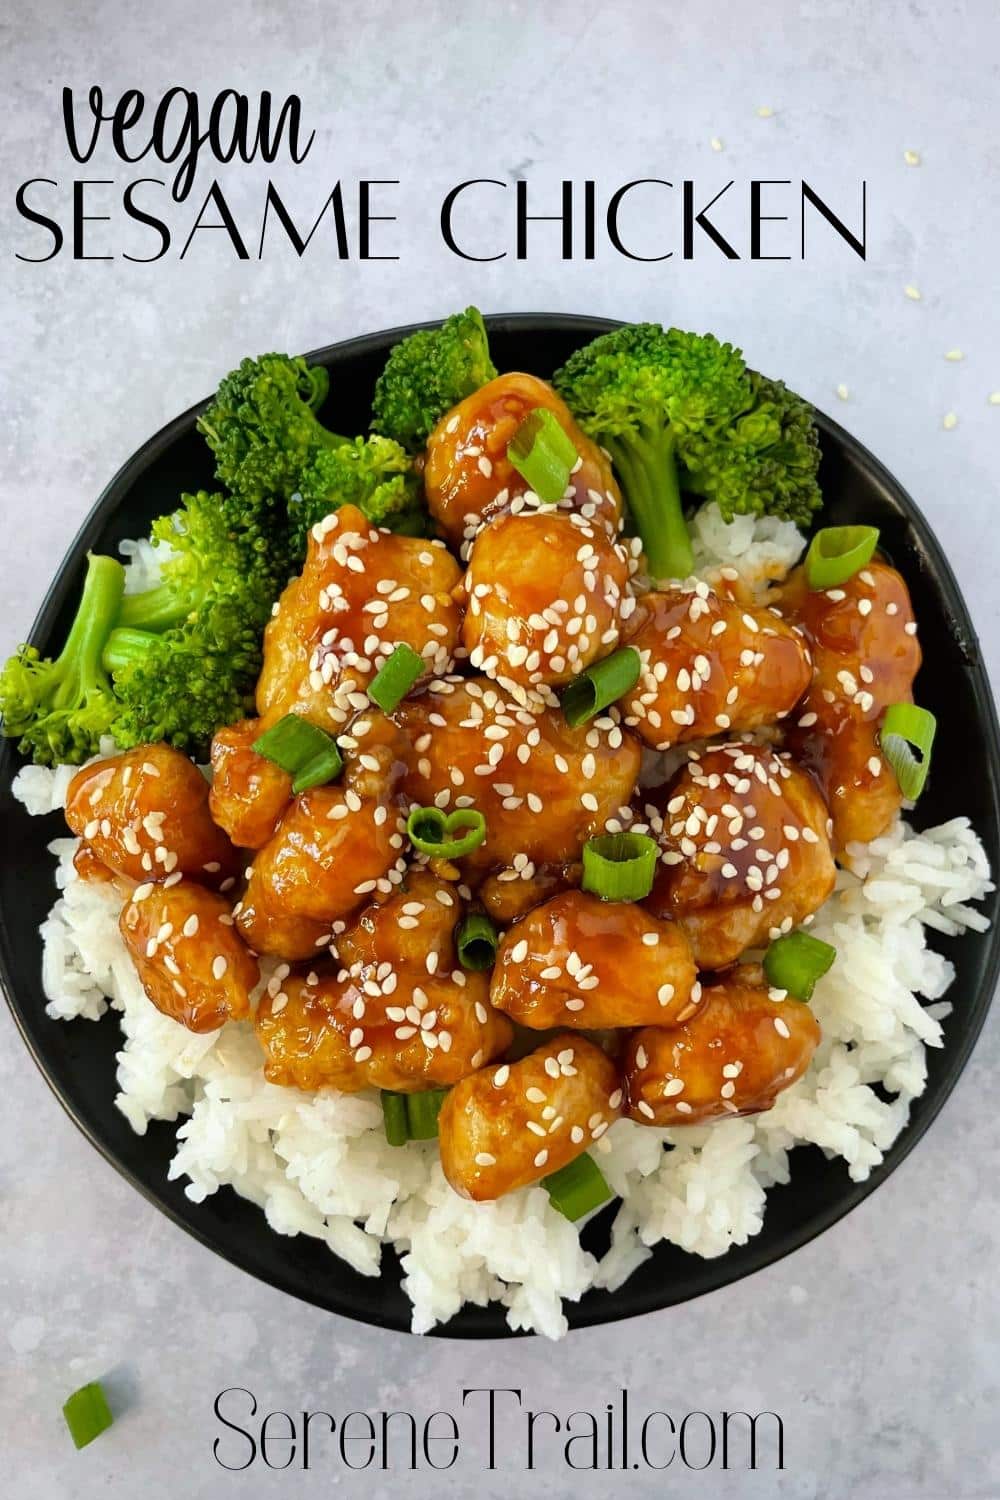 Pinterest image of vegan sesame chicken.